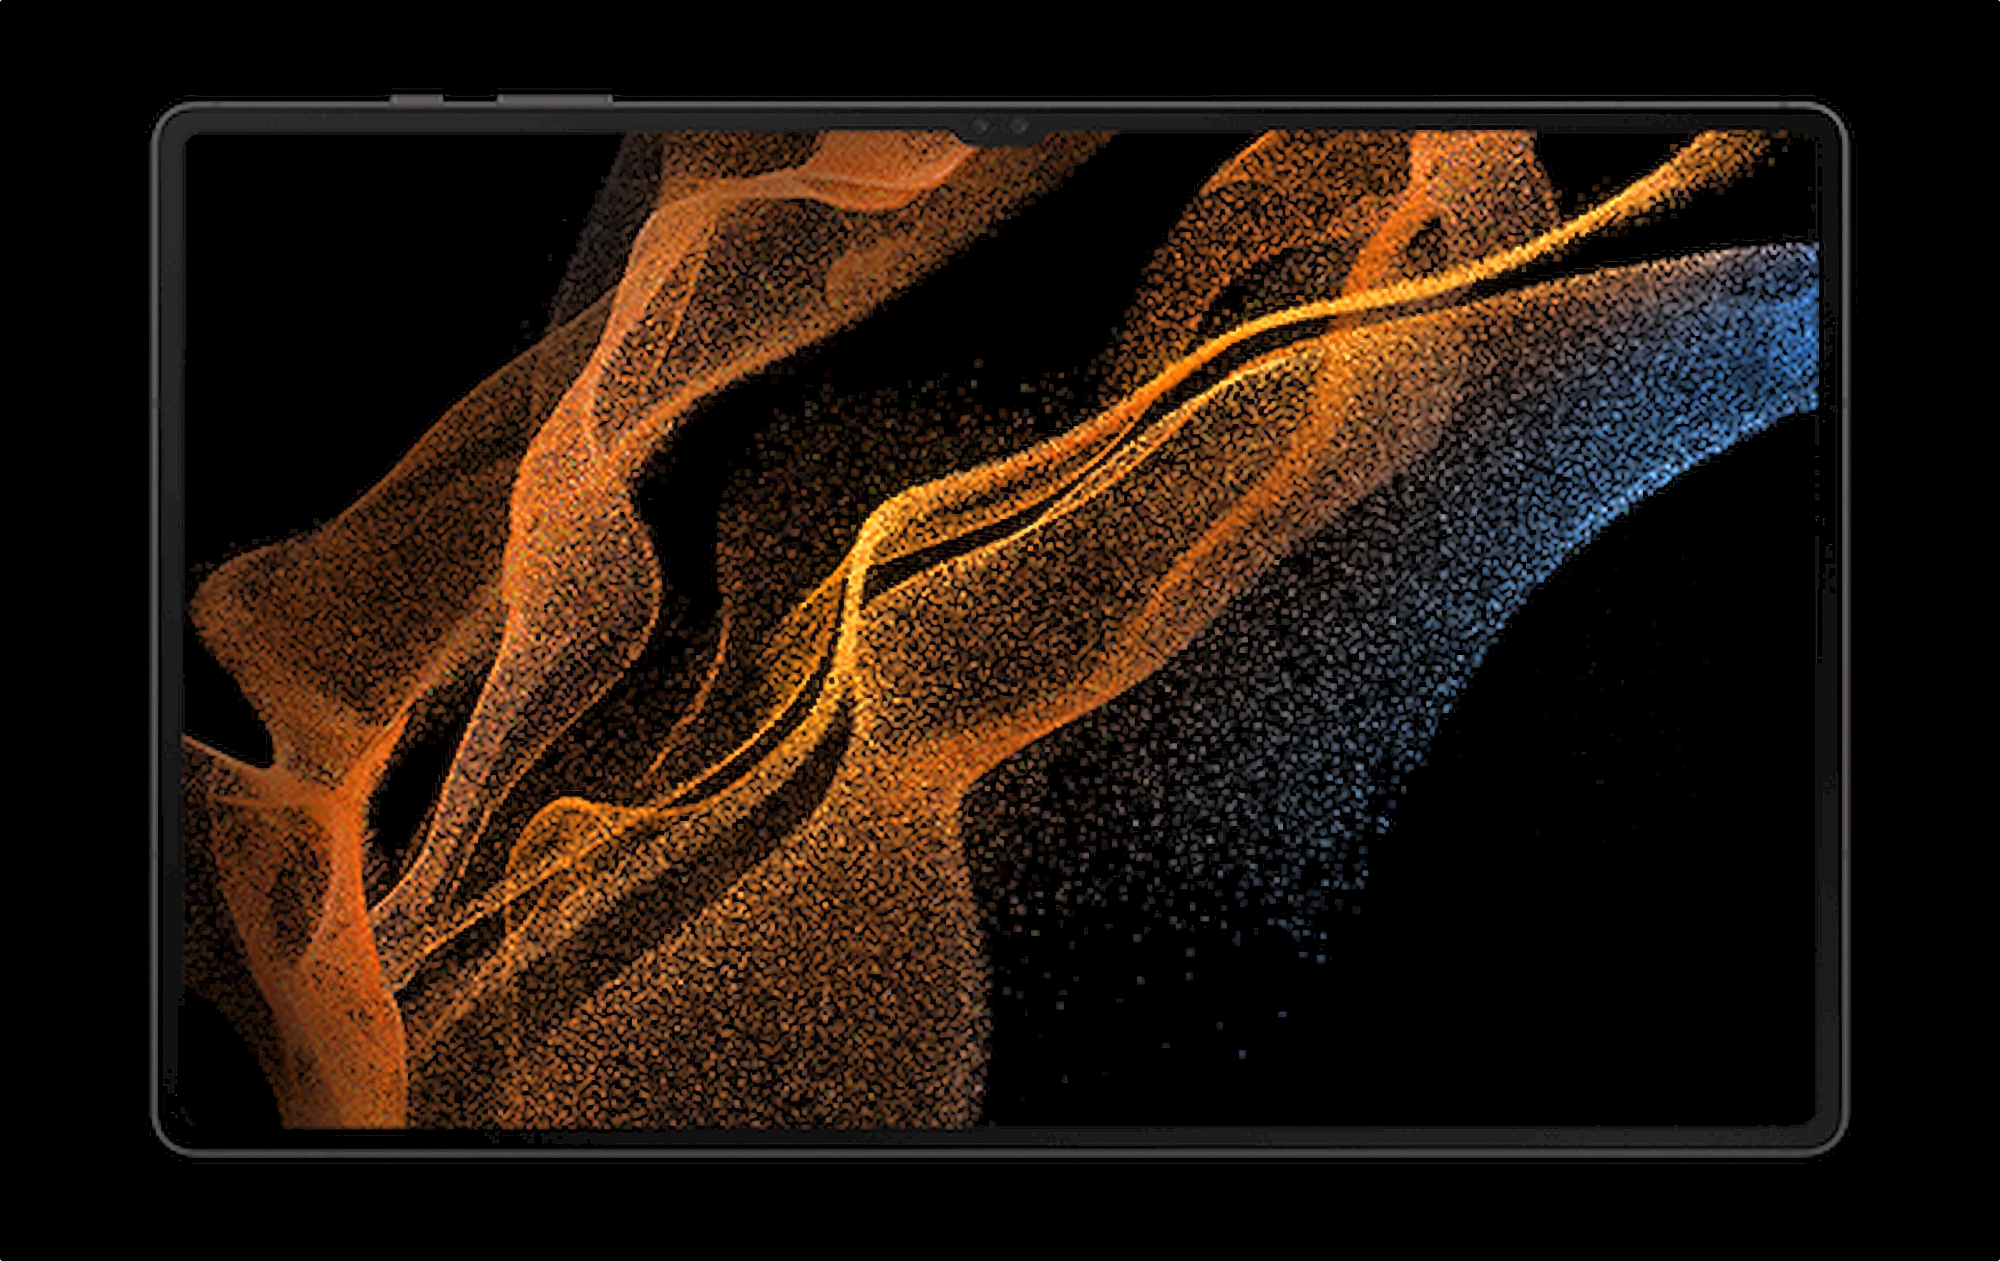 Écran AMOLED 14,6 ″, puce Snapdragon 8 Gen 1 et charge de 45 watts : les spécifications détaillées de la Galaxy Tab S8 Ultra ont été divulguées sur le réseau